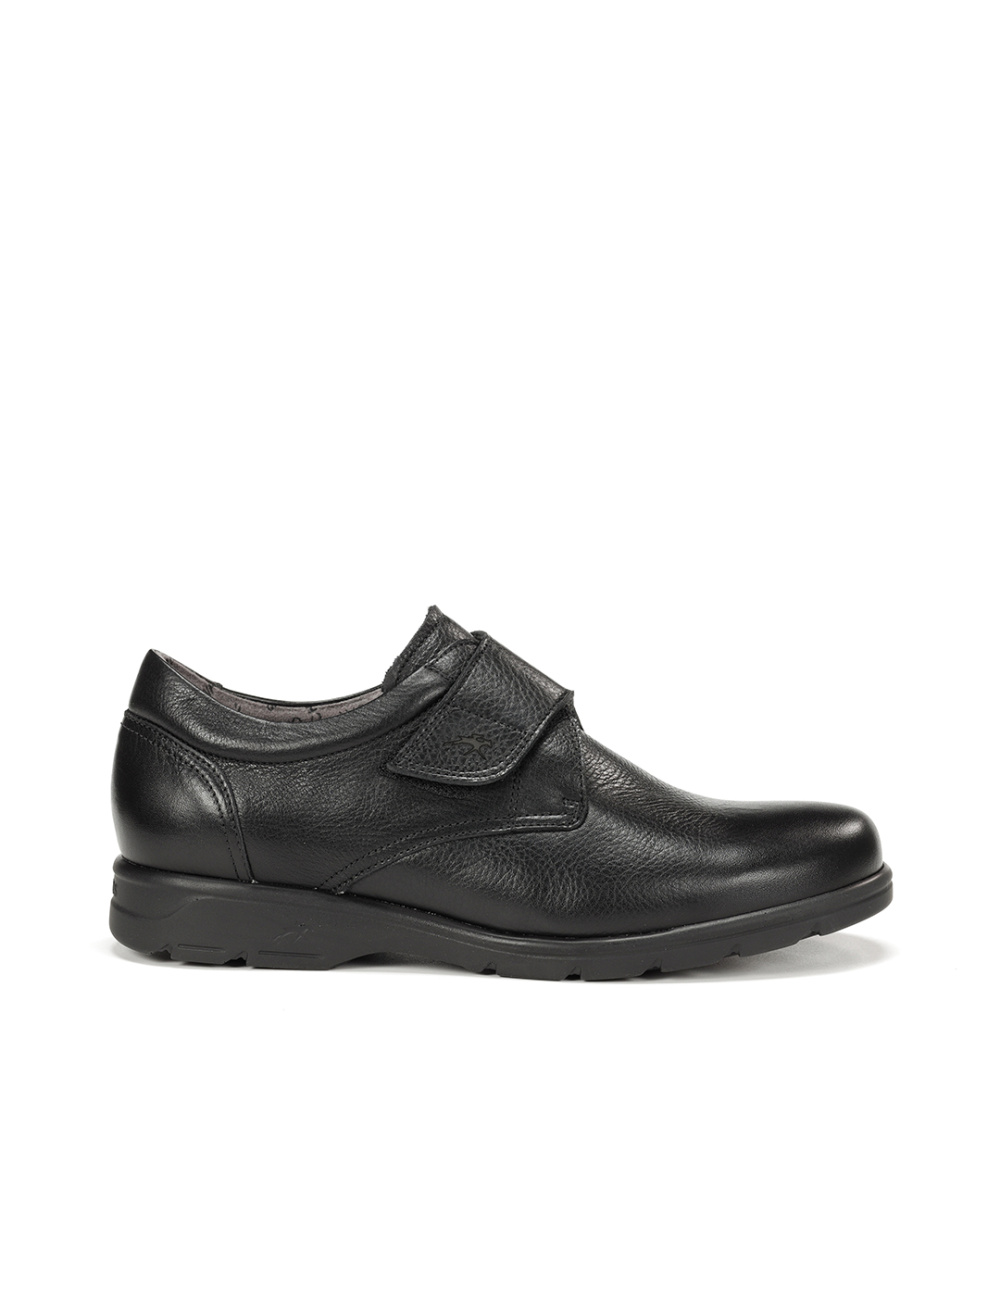 Fluchos - Zapato casual de hombre F1951